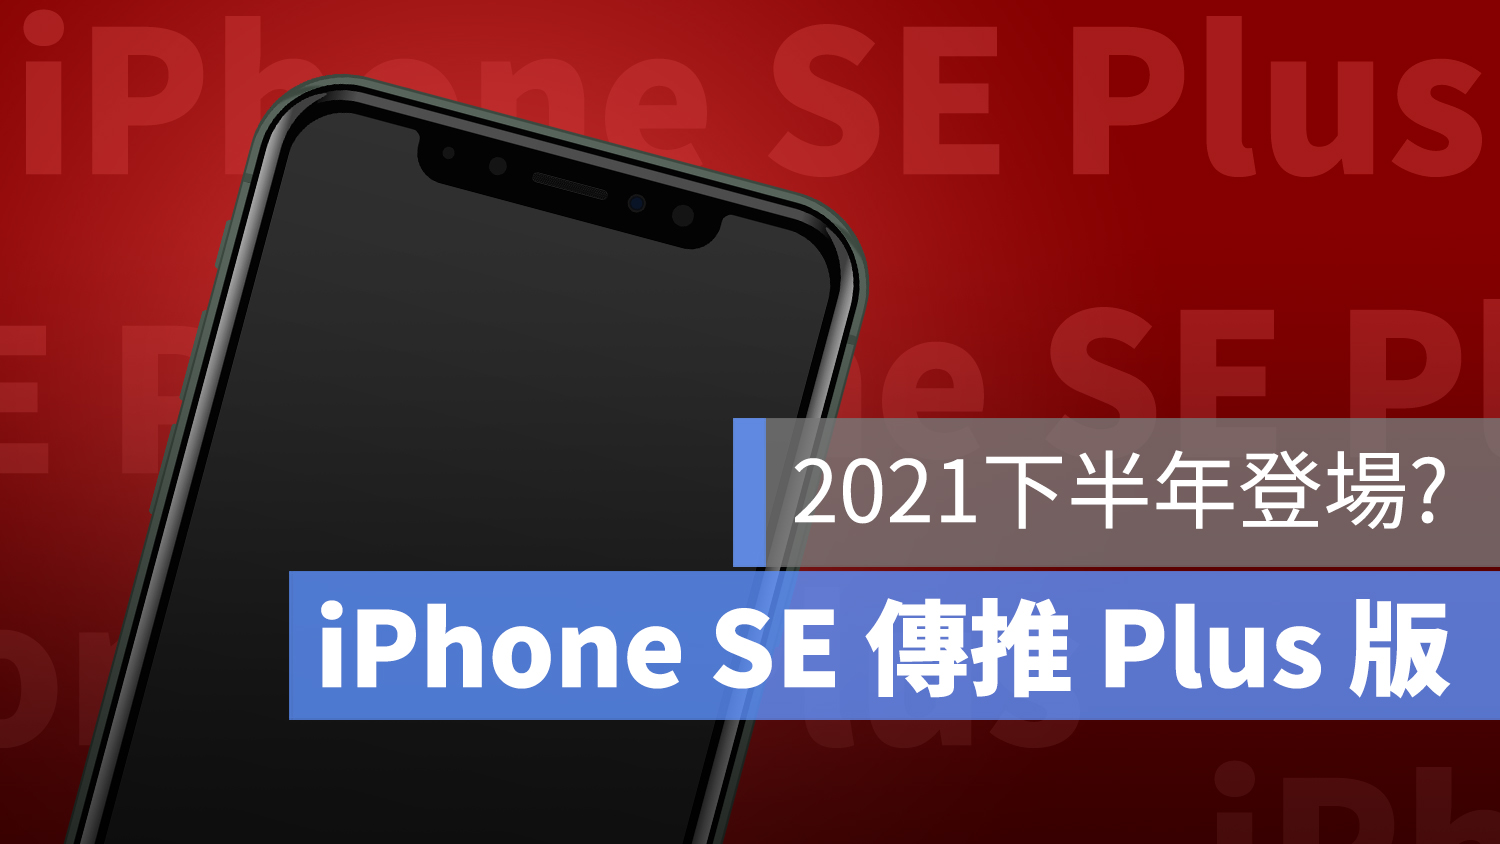 iPhone SE Plus